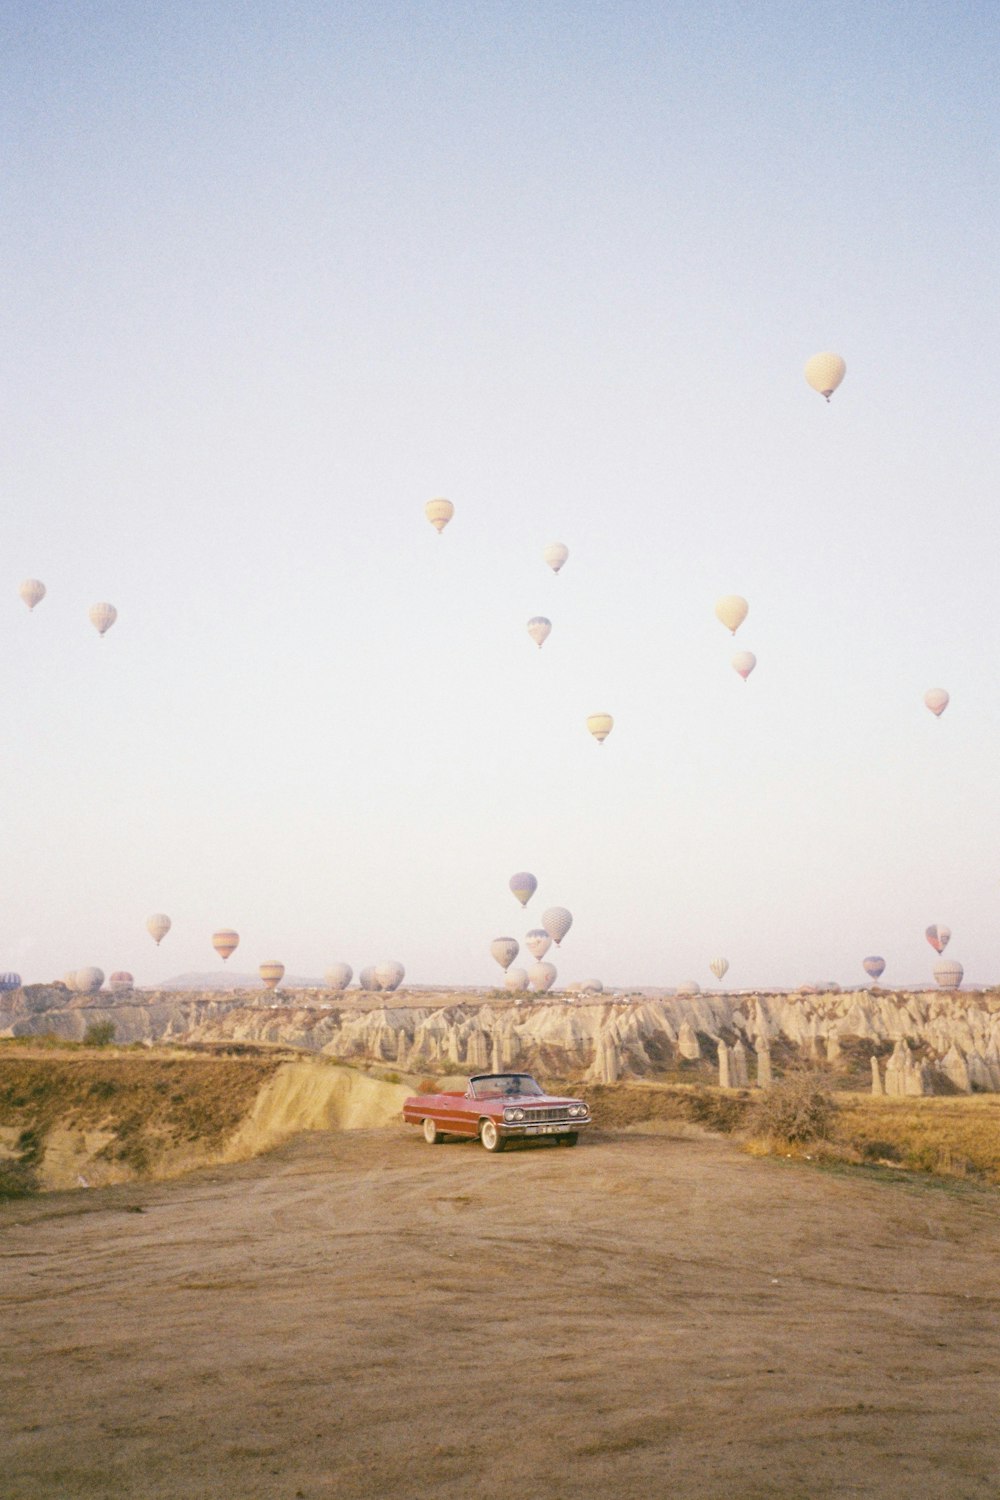 Une voiture traversant un champ de montgolfières